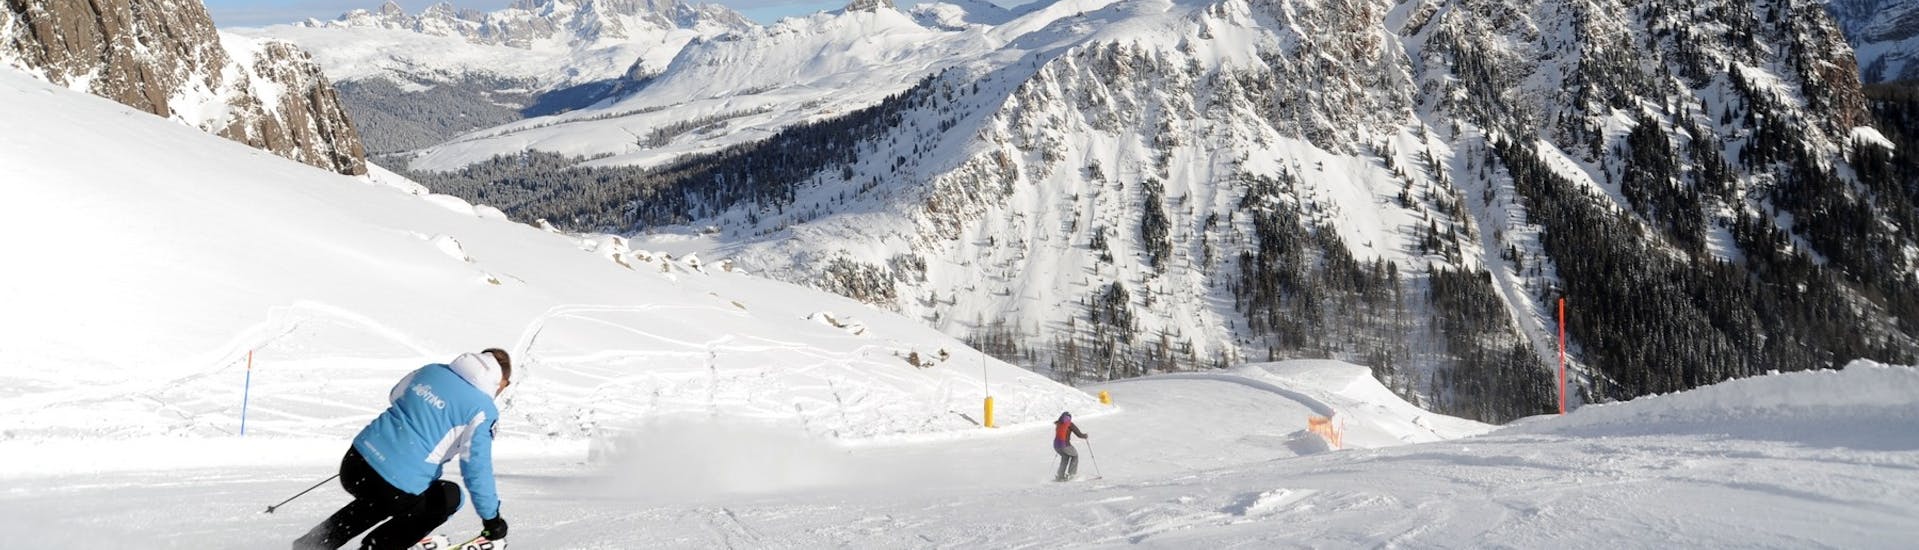 Degli sciatori sulle piste innevate delle Dolomiti durante le Lezioni private di sci per adulti per tutti i livelli con Scuola Italiana Sci Dolomiti San Martino di Castrozza.